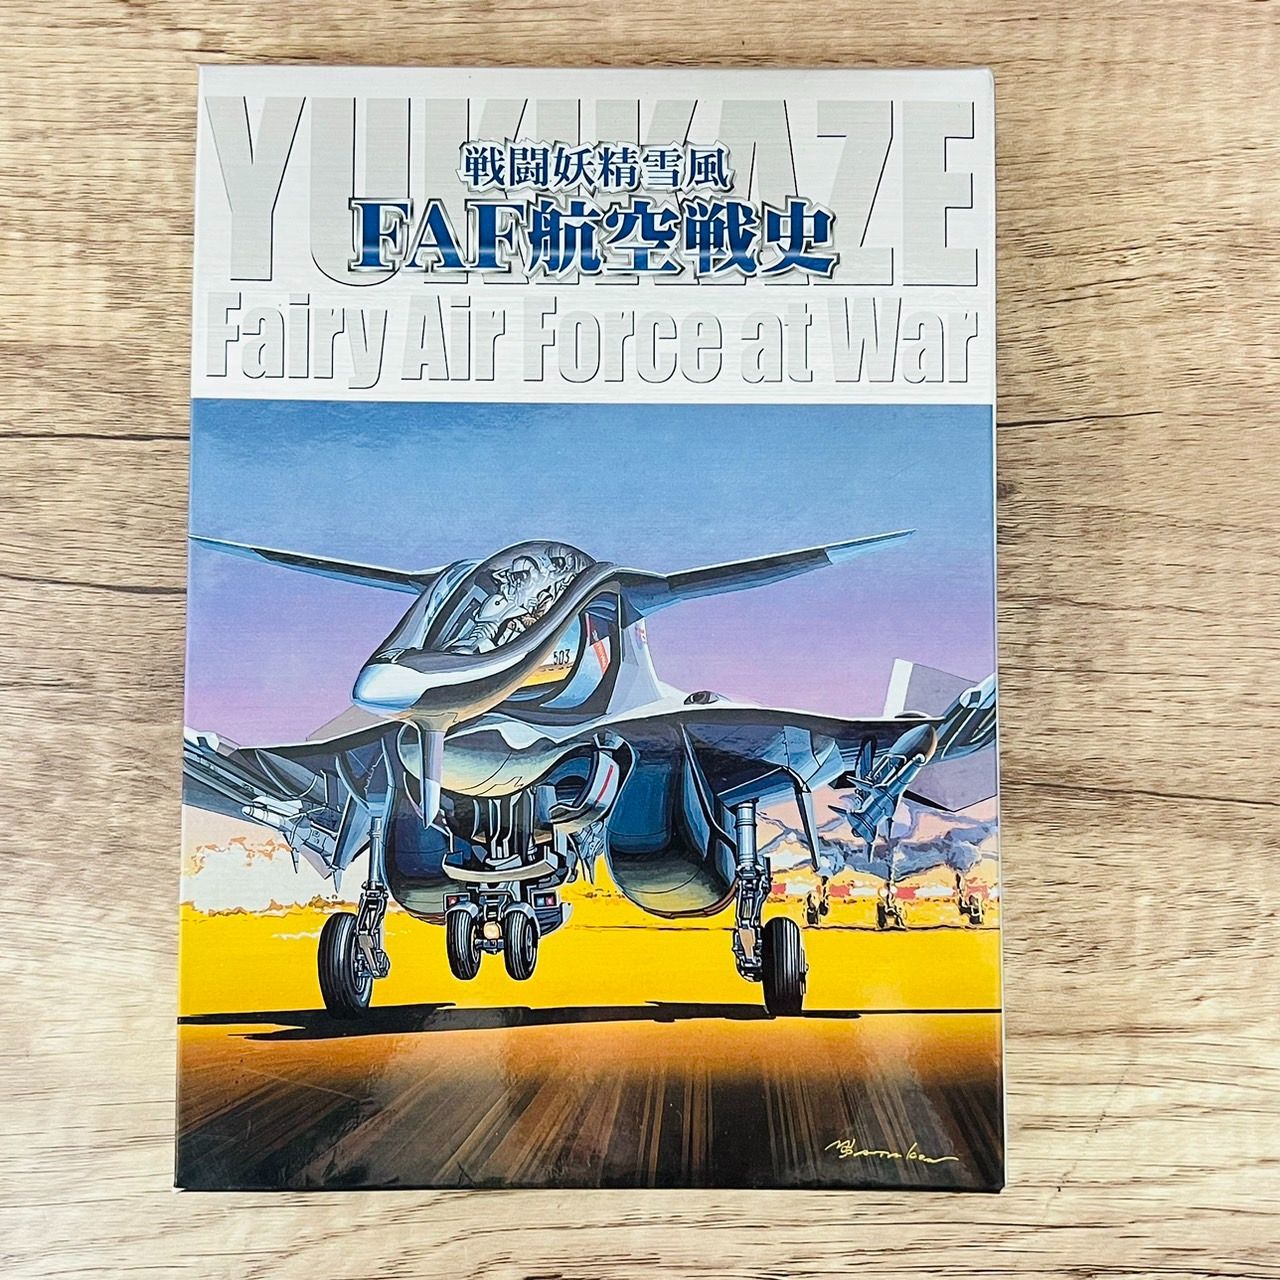 戦闘妖精雪風 FAF航空戦史 DVD アニメ - メルカリ